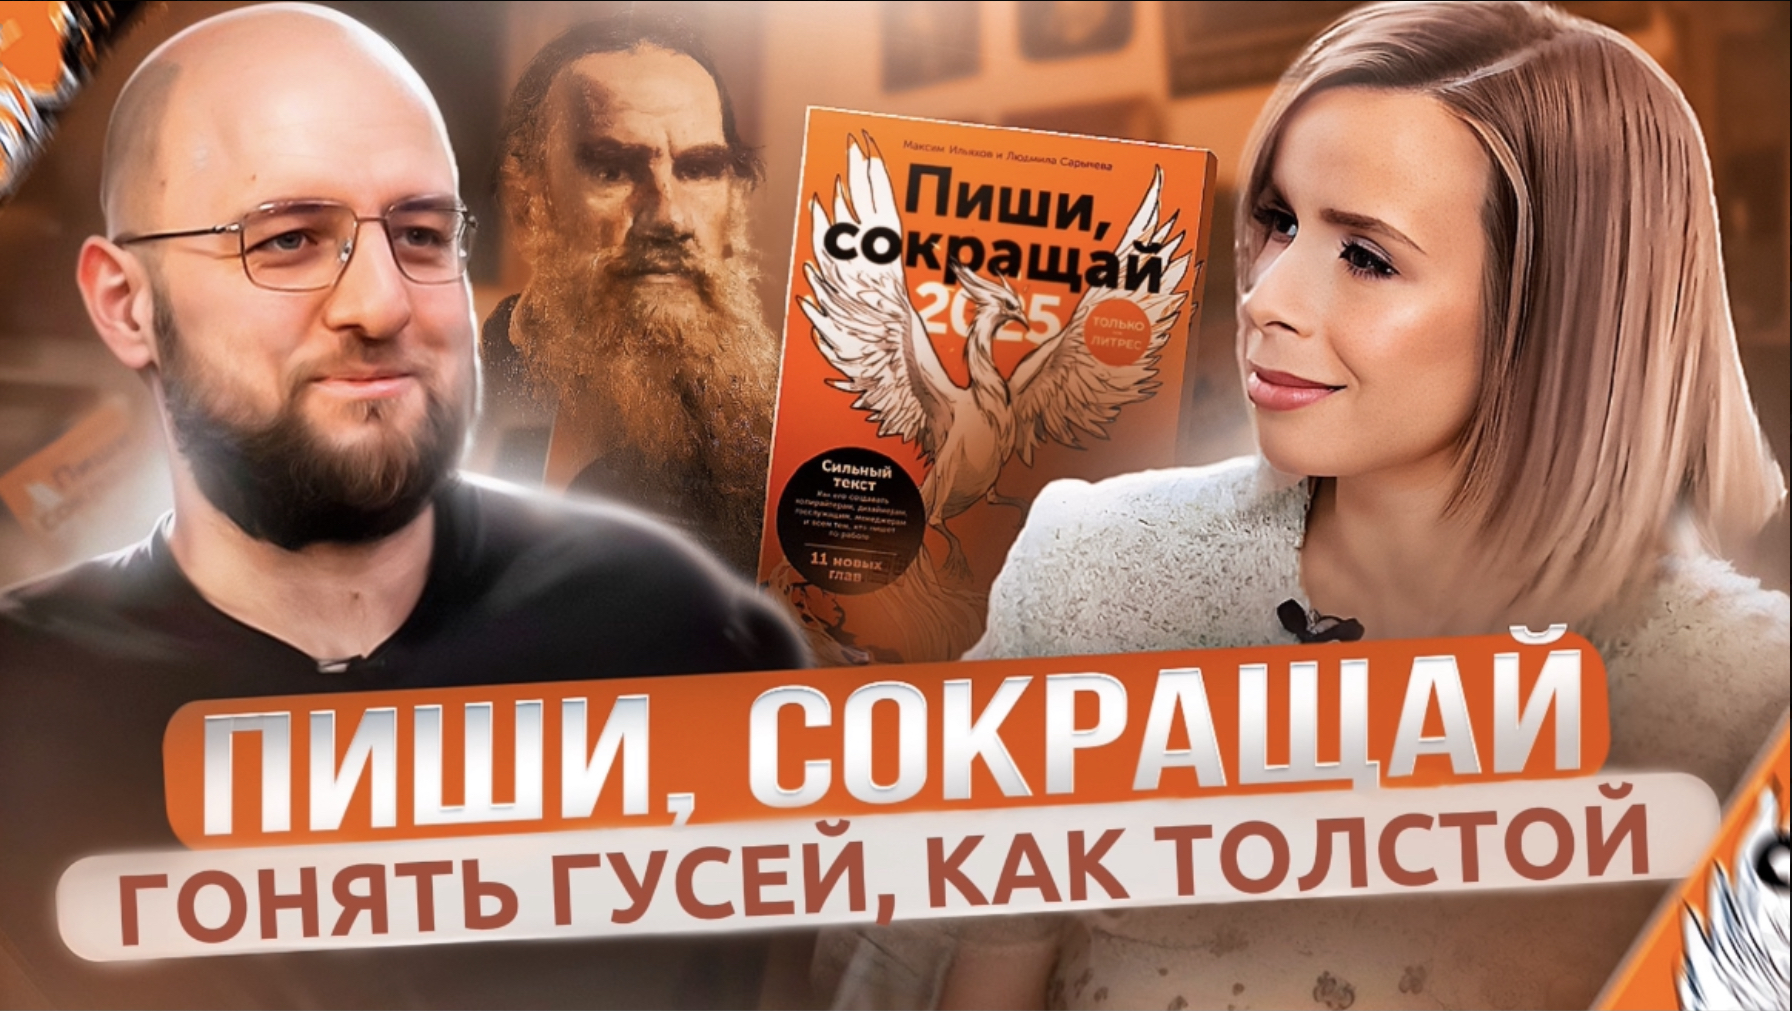 Про личное и публичное с главредом Максимом Ильховым, автором книги "Пиши, сокращай" и отцом сына.